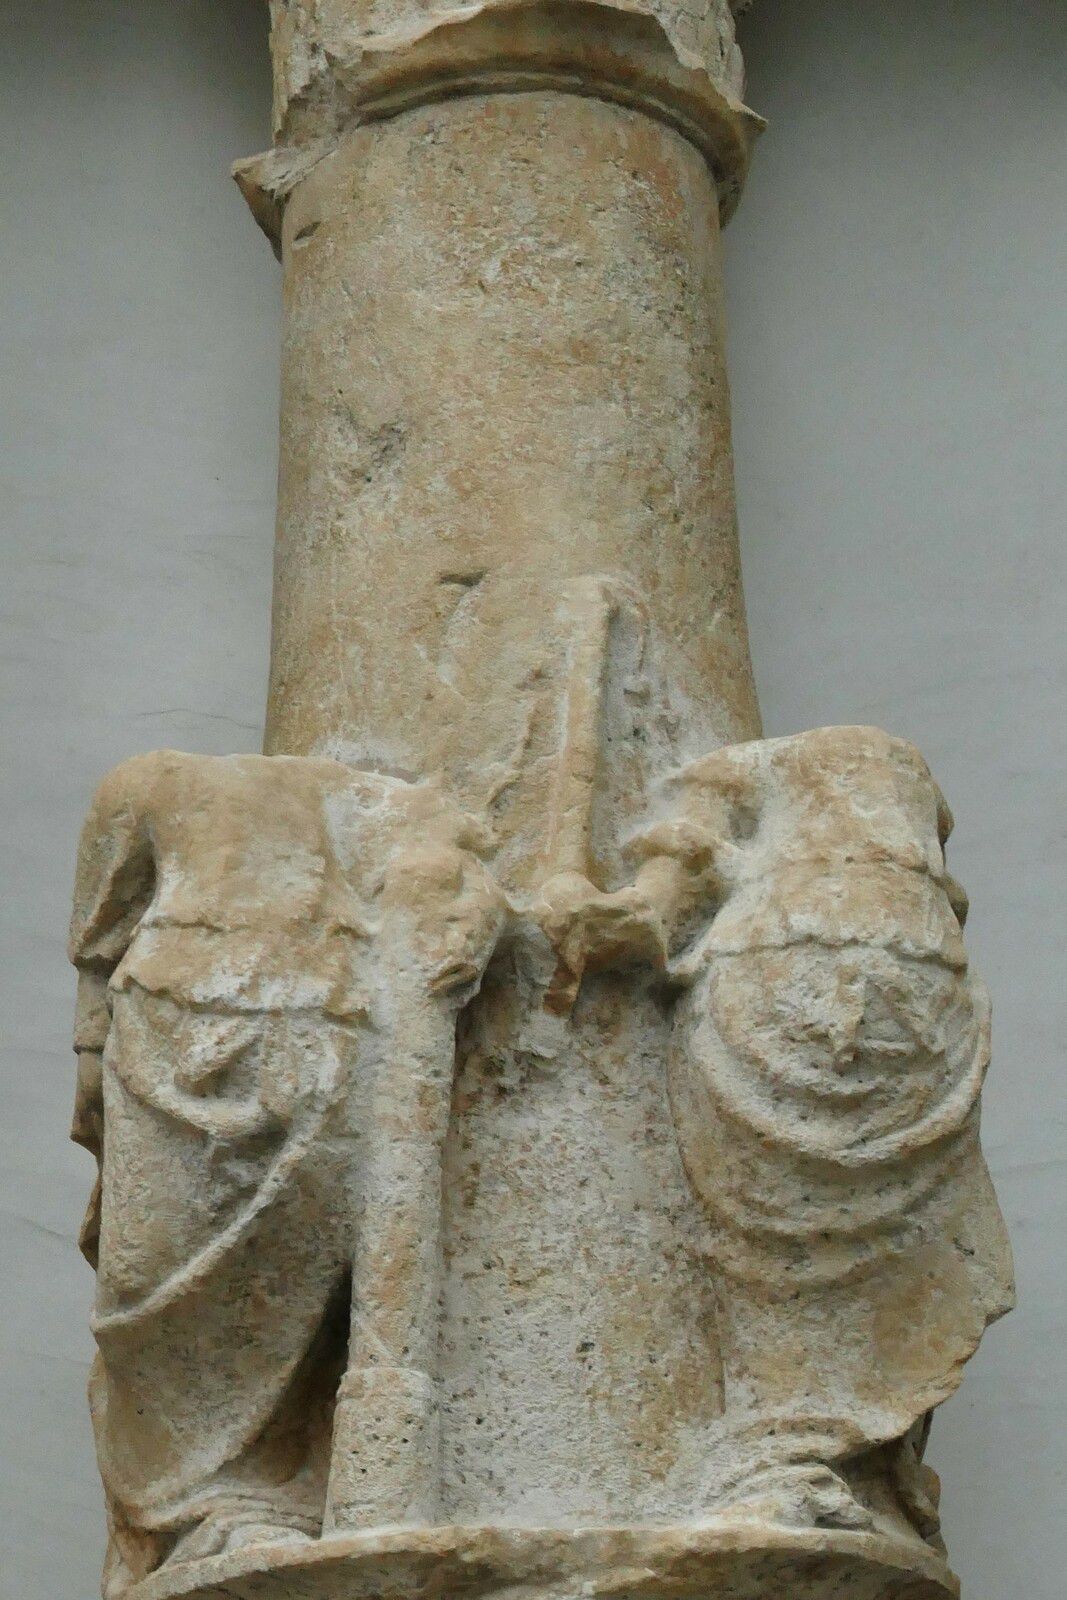 L'Aître Saint-Maclou de Rouen. Les colonnes de pierre sculptées du côté nord (1526-1529). Photographie lavieb-aile août 2020.